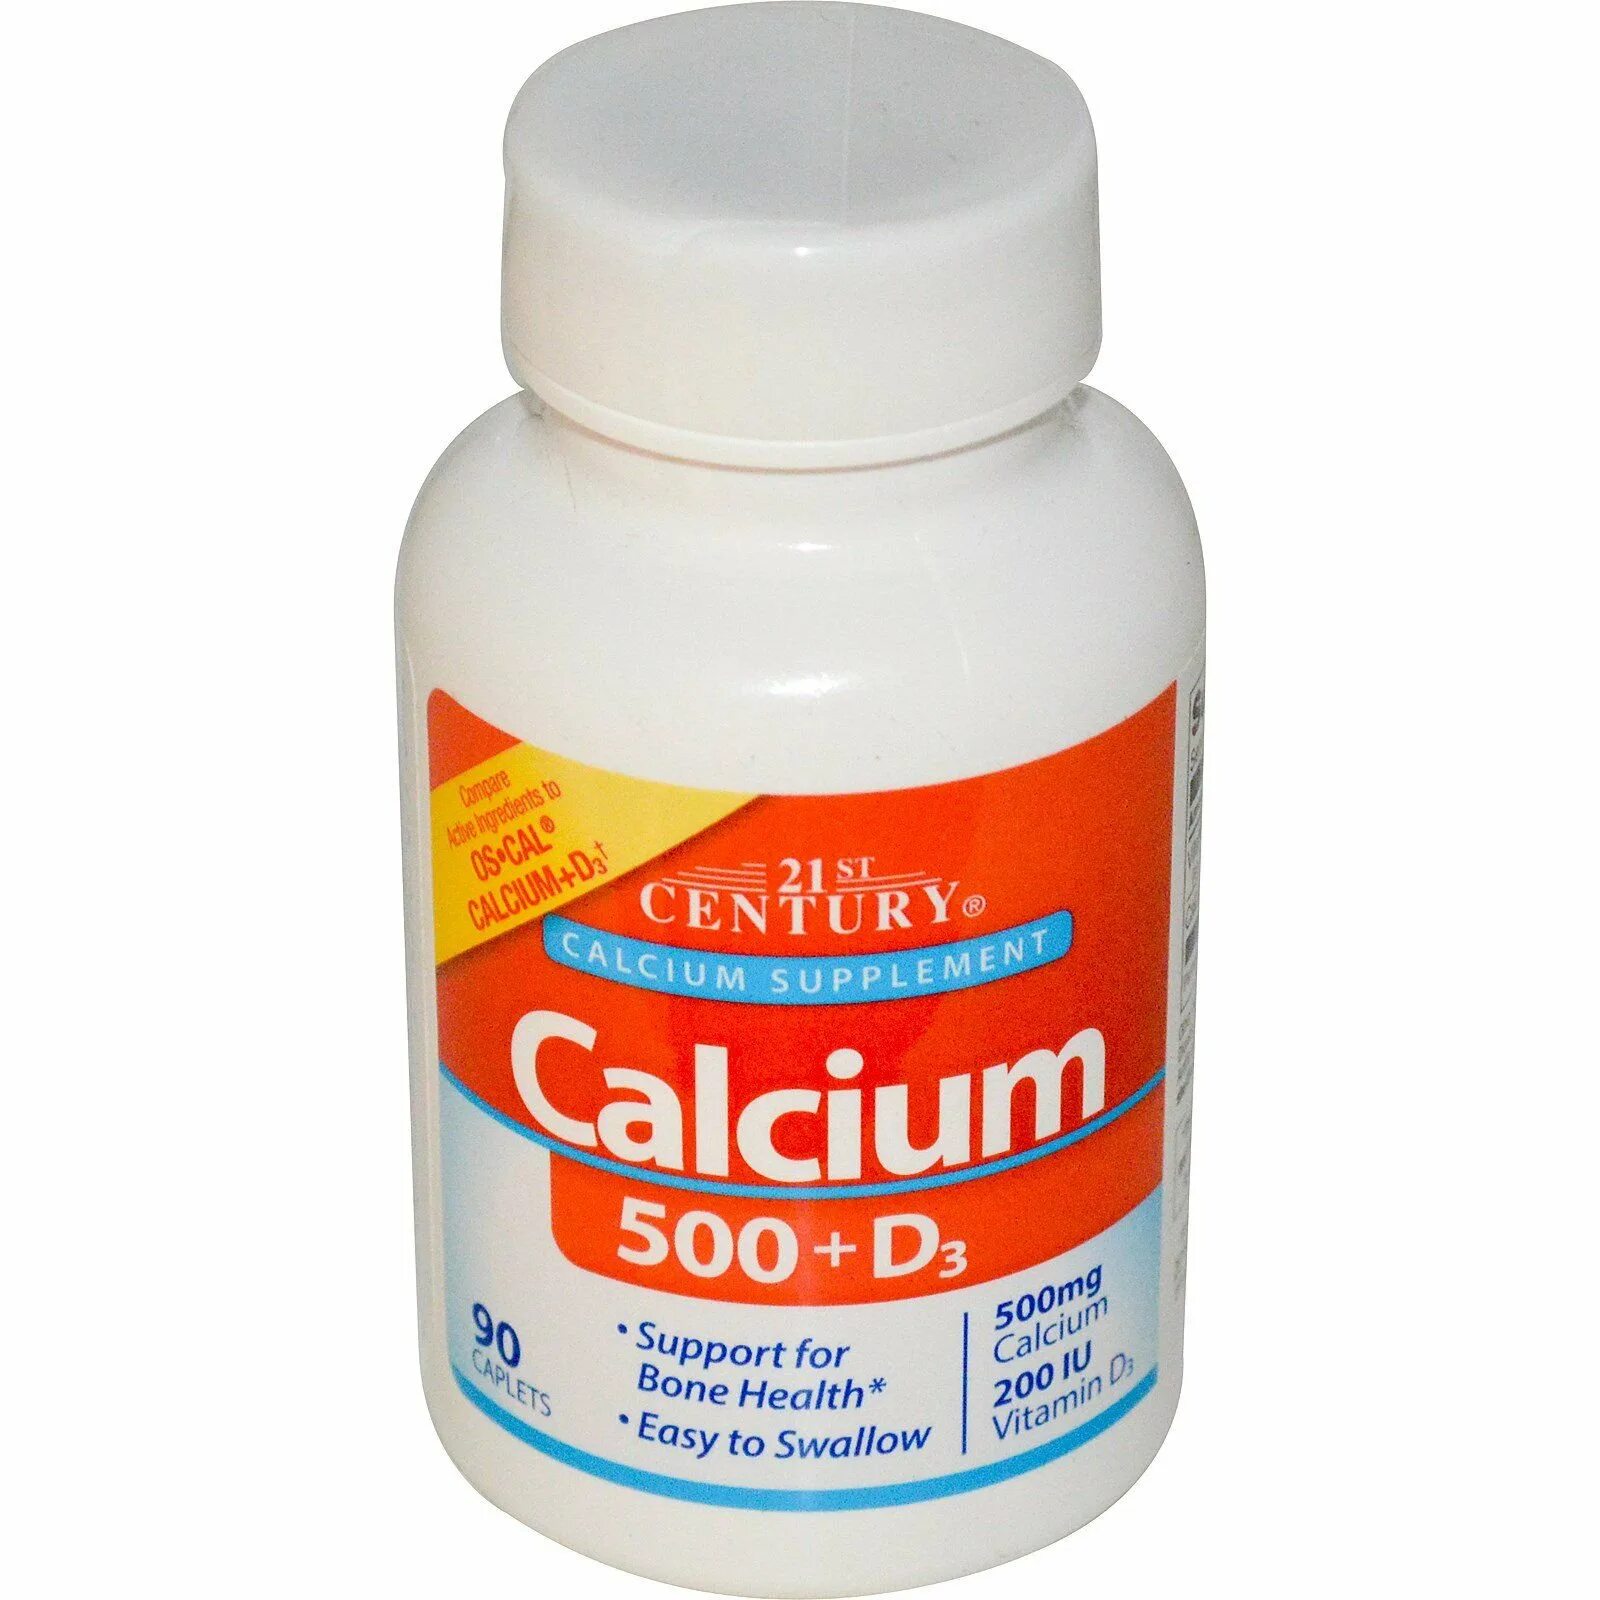 Кальций д3 Calcium d3. Кальциум 500 и д3. 21st Century кальций д3. Кальциум д3